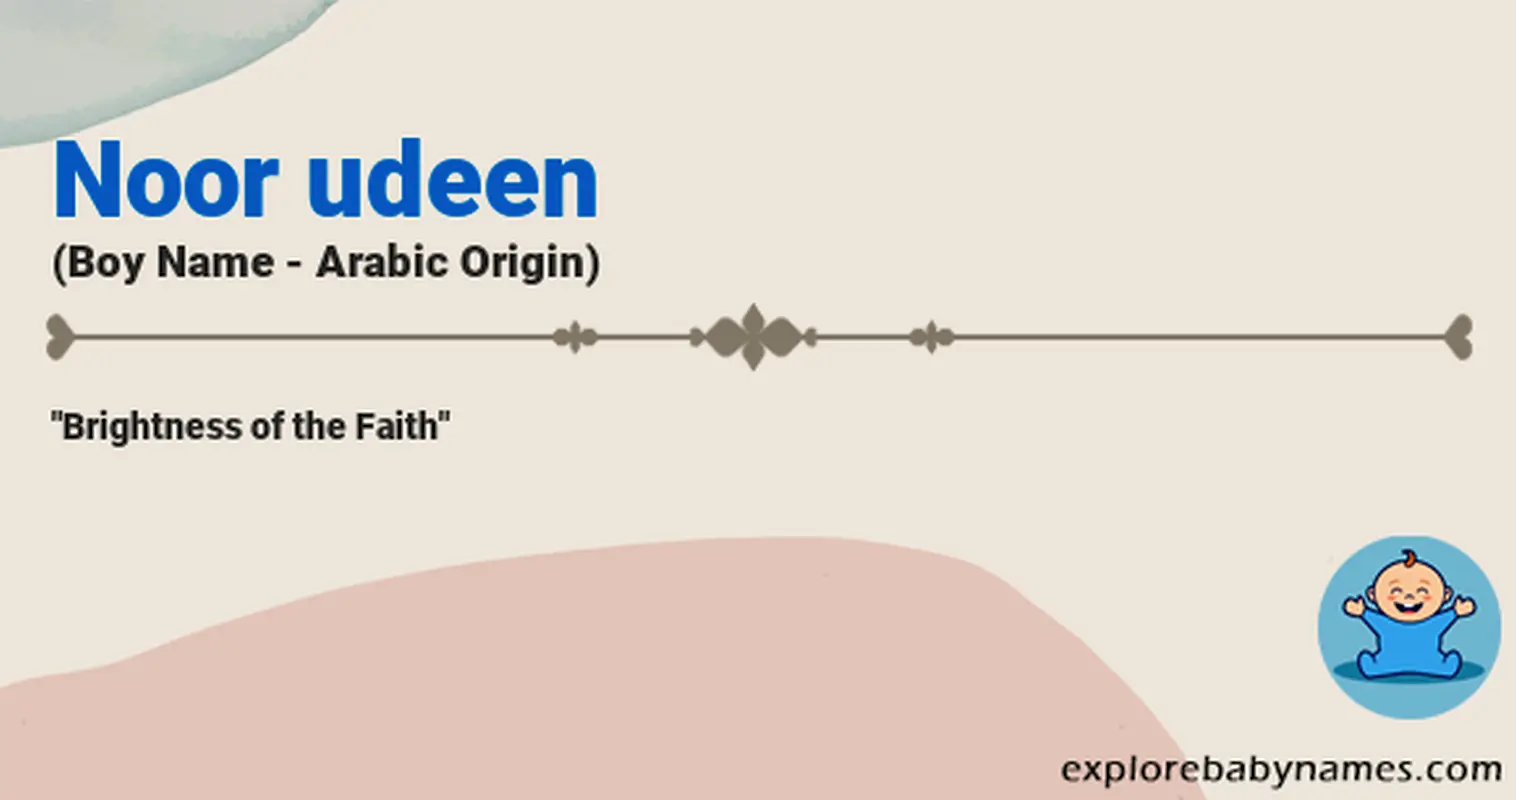 Meaning of Noor udeen